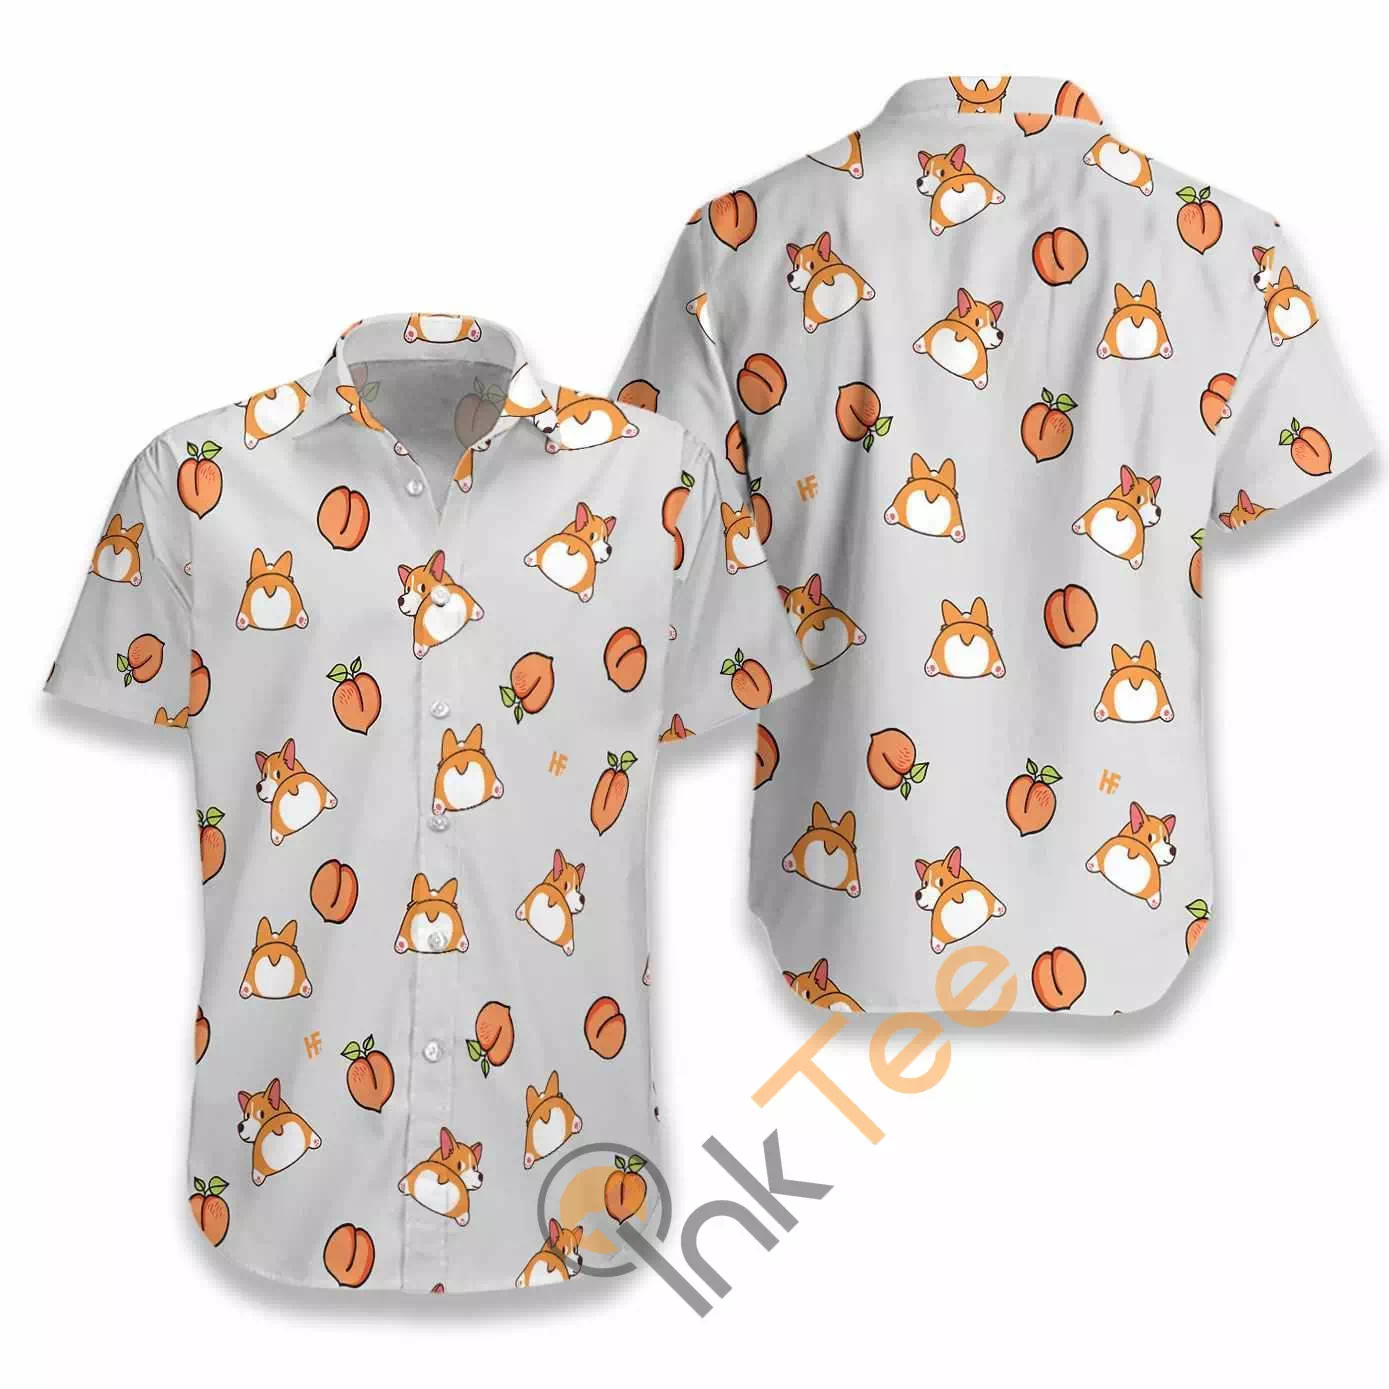 Corgi Butt And Peaches Seamless N560 Hawaiian Shirts